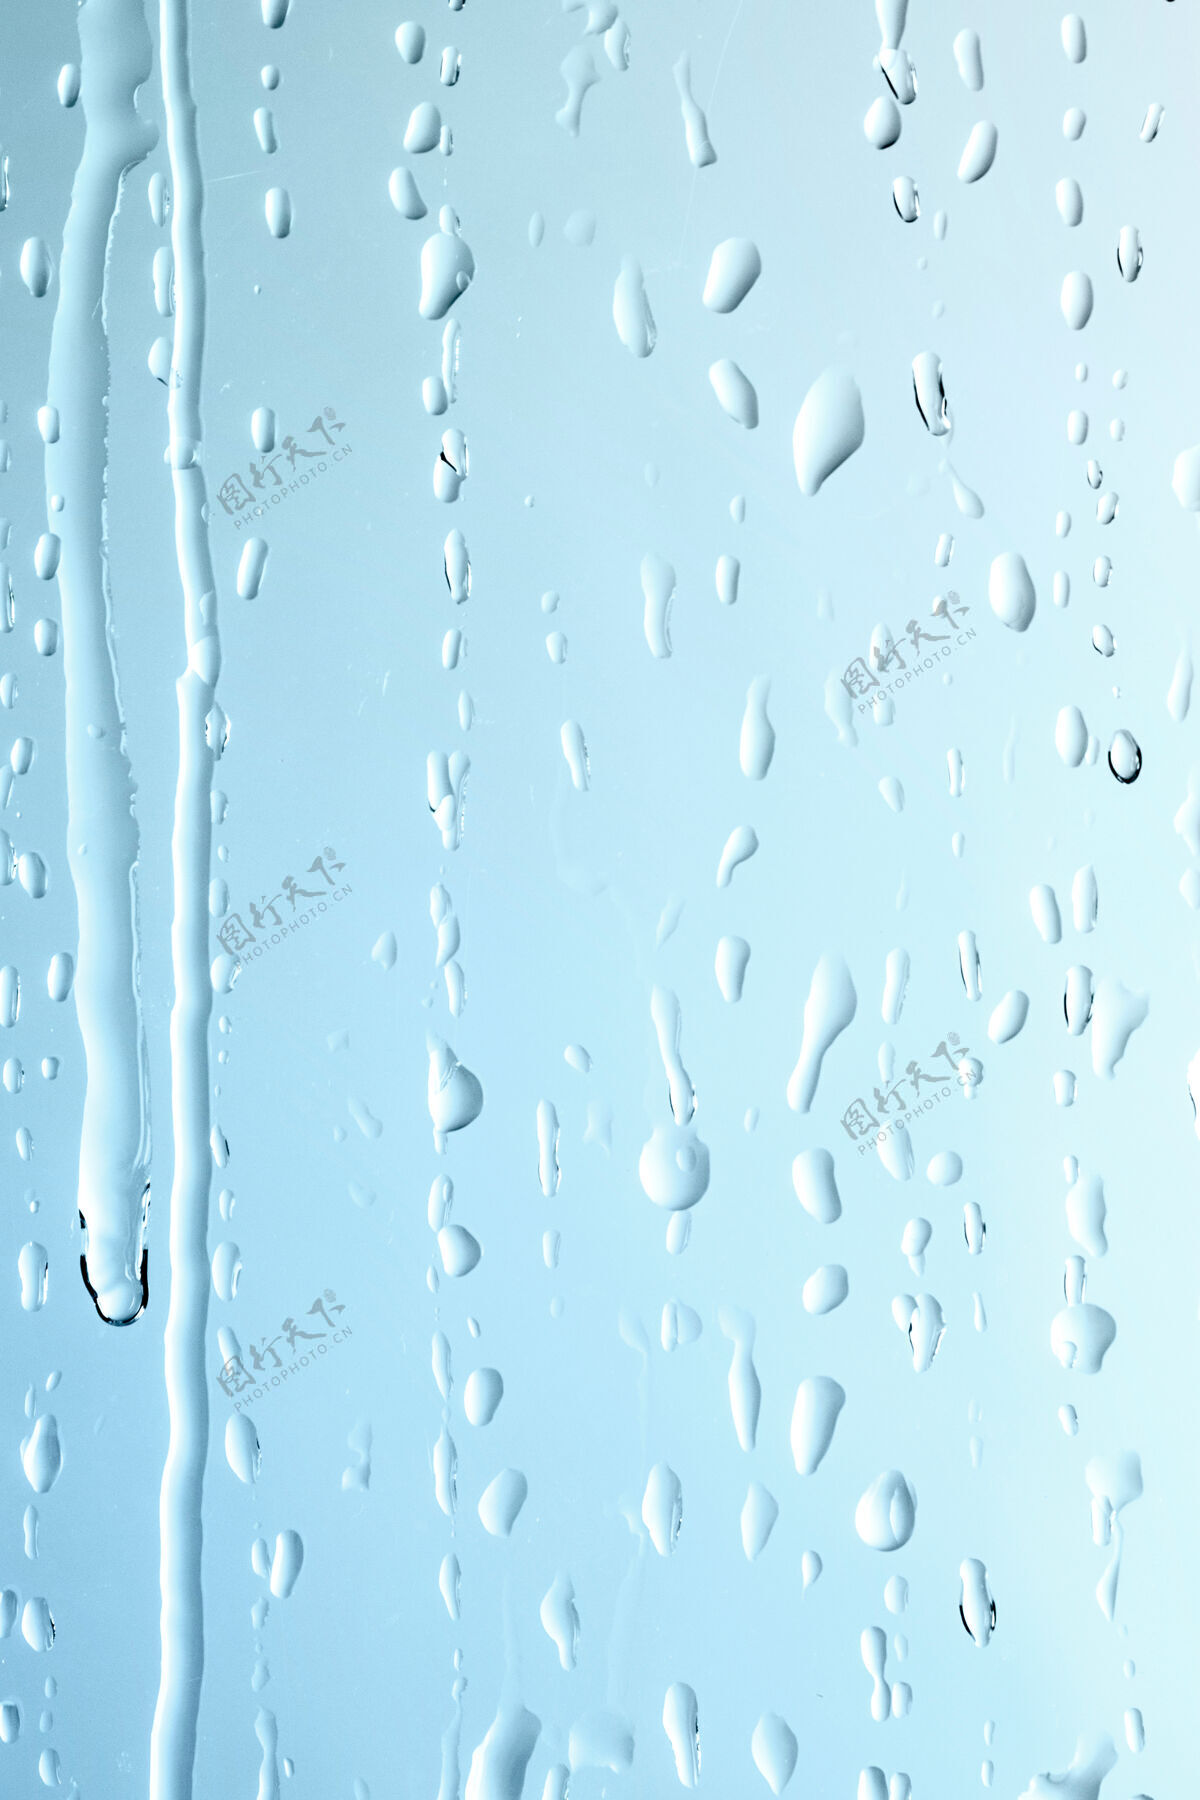 湿雨滴图案抽象背景窗户雨清晰